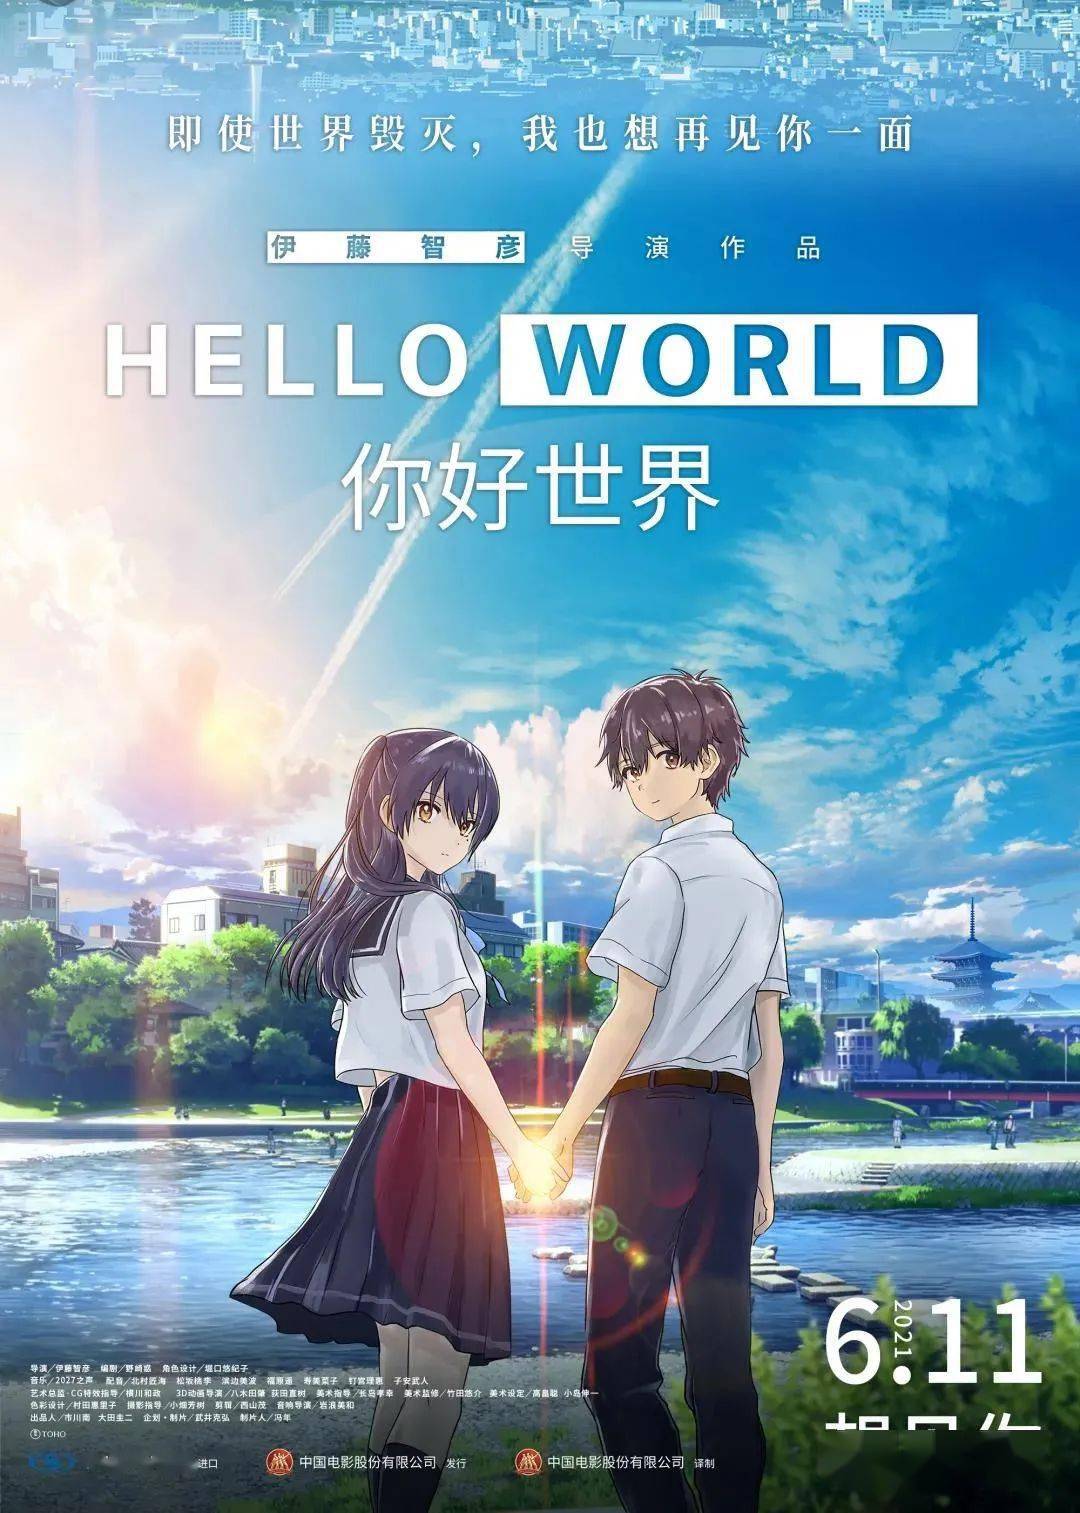 钉宫理惠等配音的,日本爱情奇幻动画电影《你好世界》(《hello world